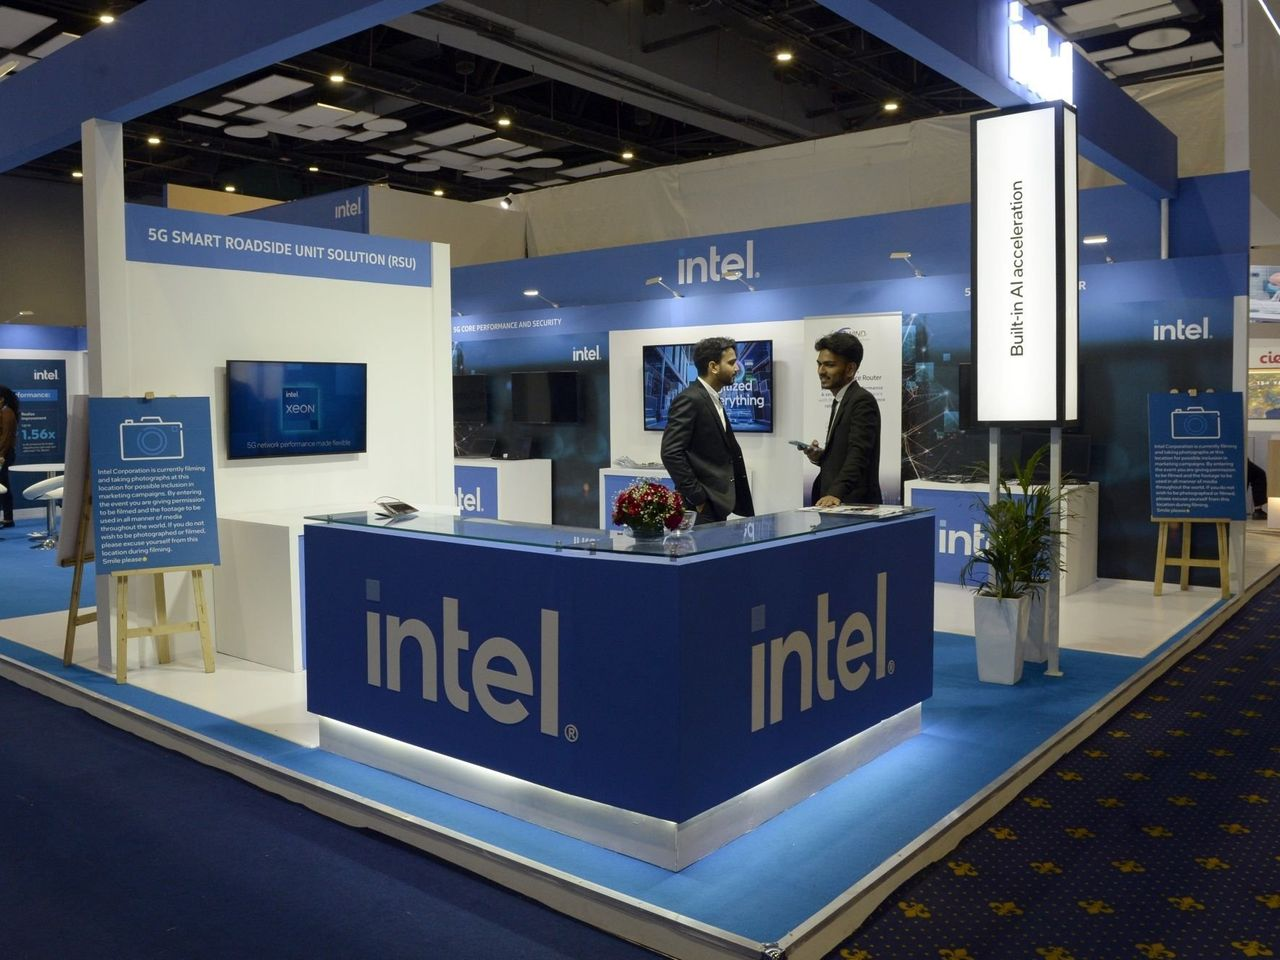 Intel sụt giảm doanh thu đáng thất vọng trong bối cảnh PC yếu. Ảnh: @AFP.